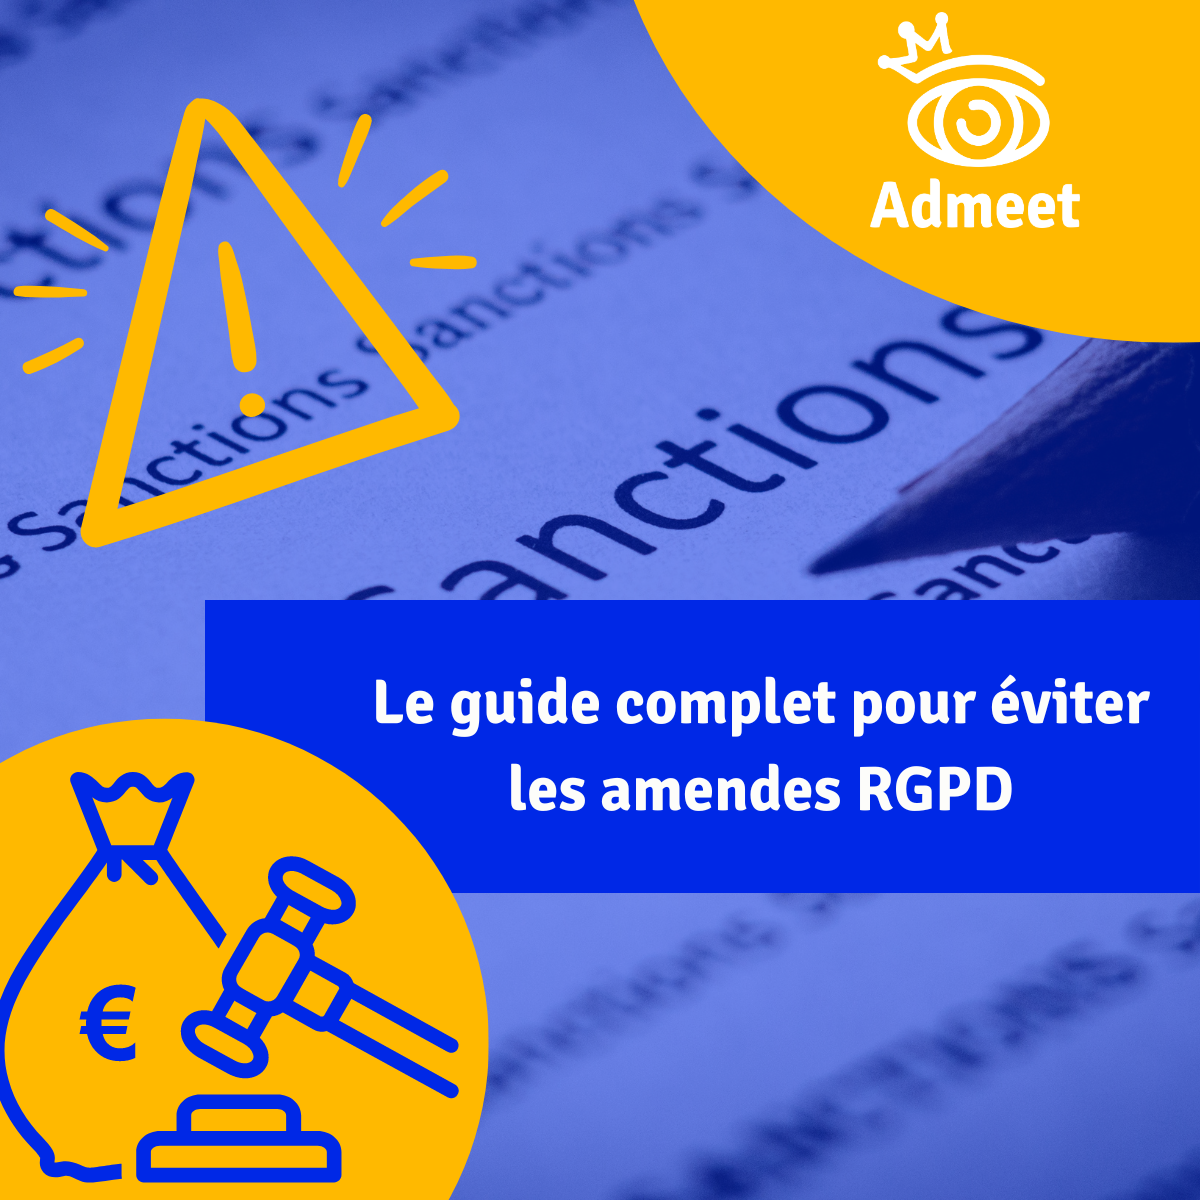 Le guide complet pat Admeet pour éviter les amendes RPGD et avoir un site web conforme